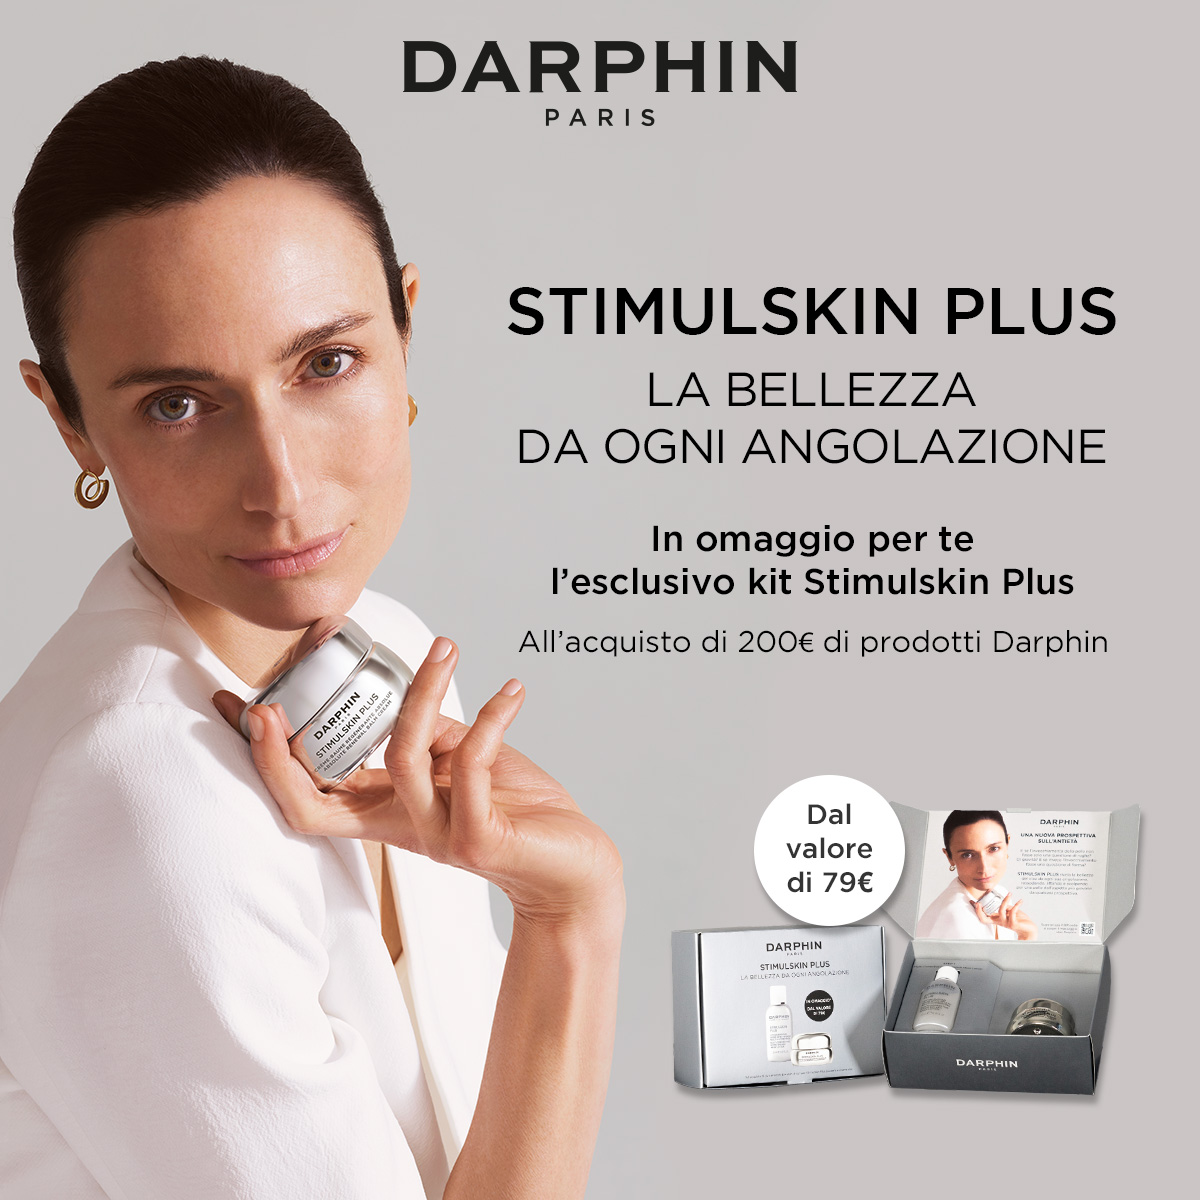 Darphin promo: acquista 200€ di prodotti del marchio, per te l'esclusivo kit Stimulskin plus dal valore di 79€